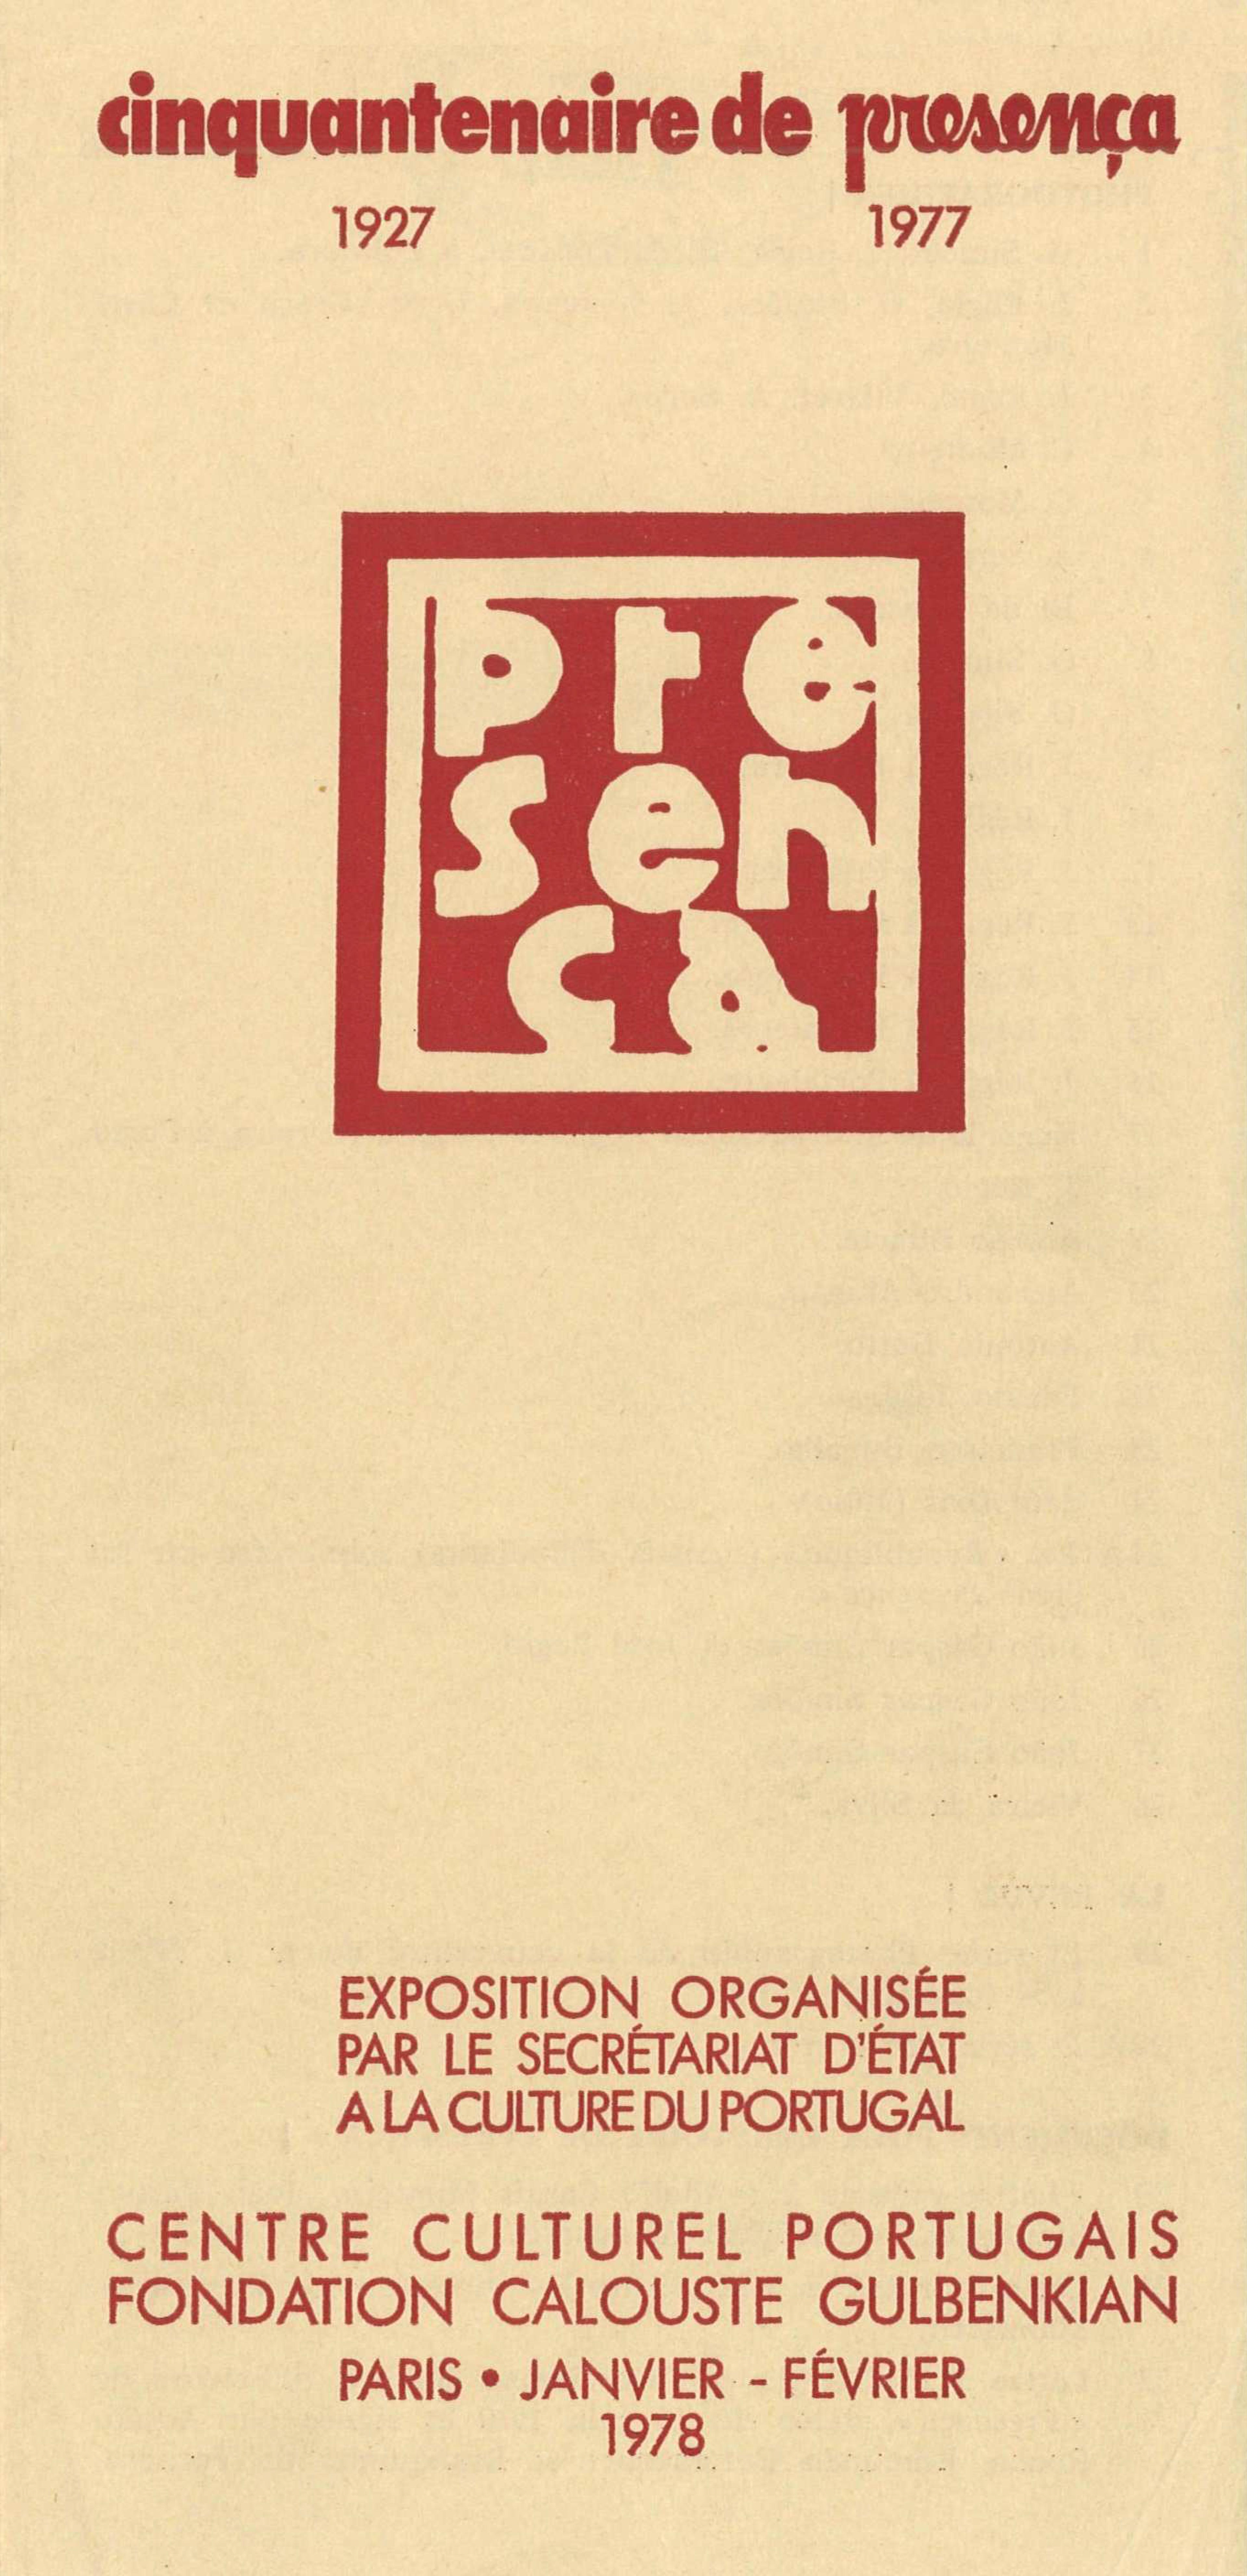 Cinquantenaire de Presença, 1927 – 1977